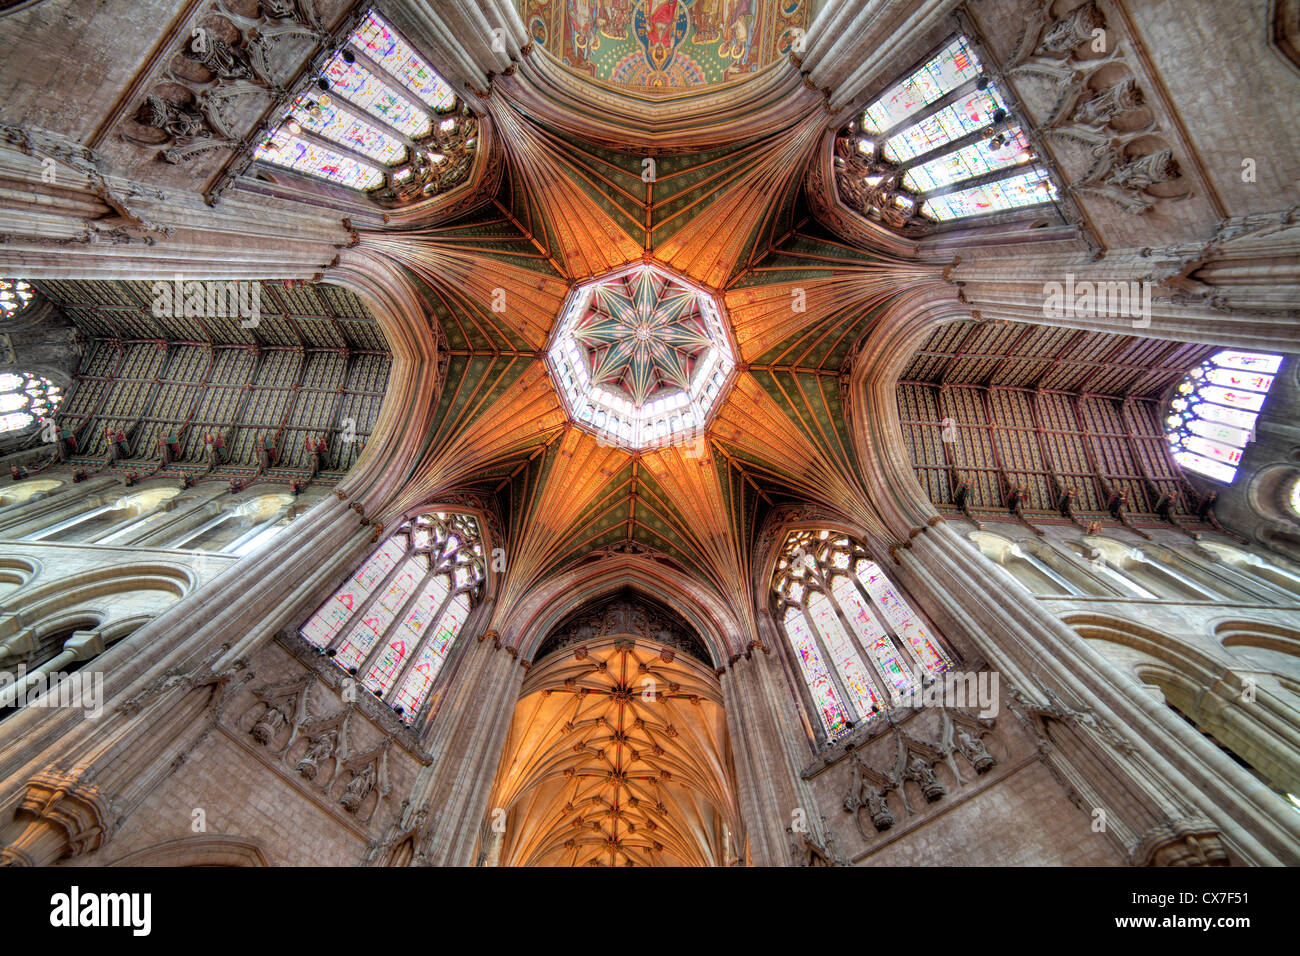 Ely Cathedral, Ely, Cambridgeshire, England, UK Stock Photo